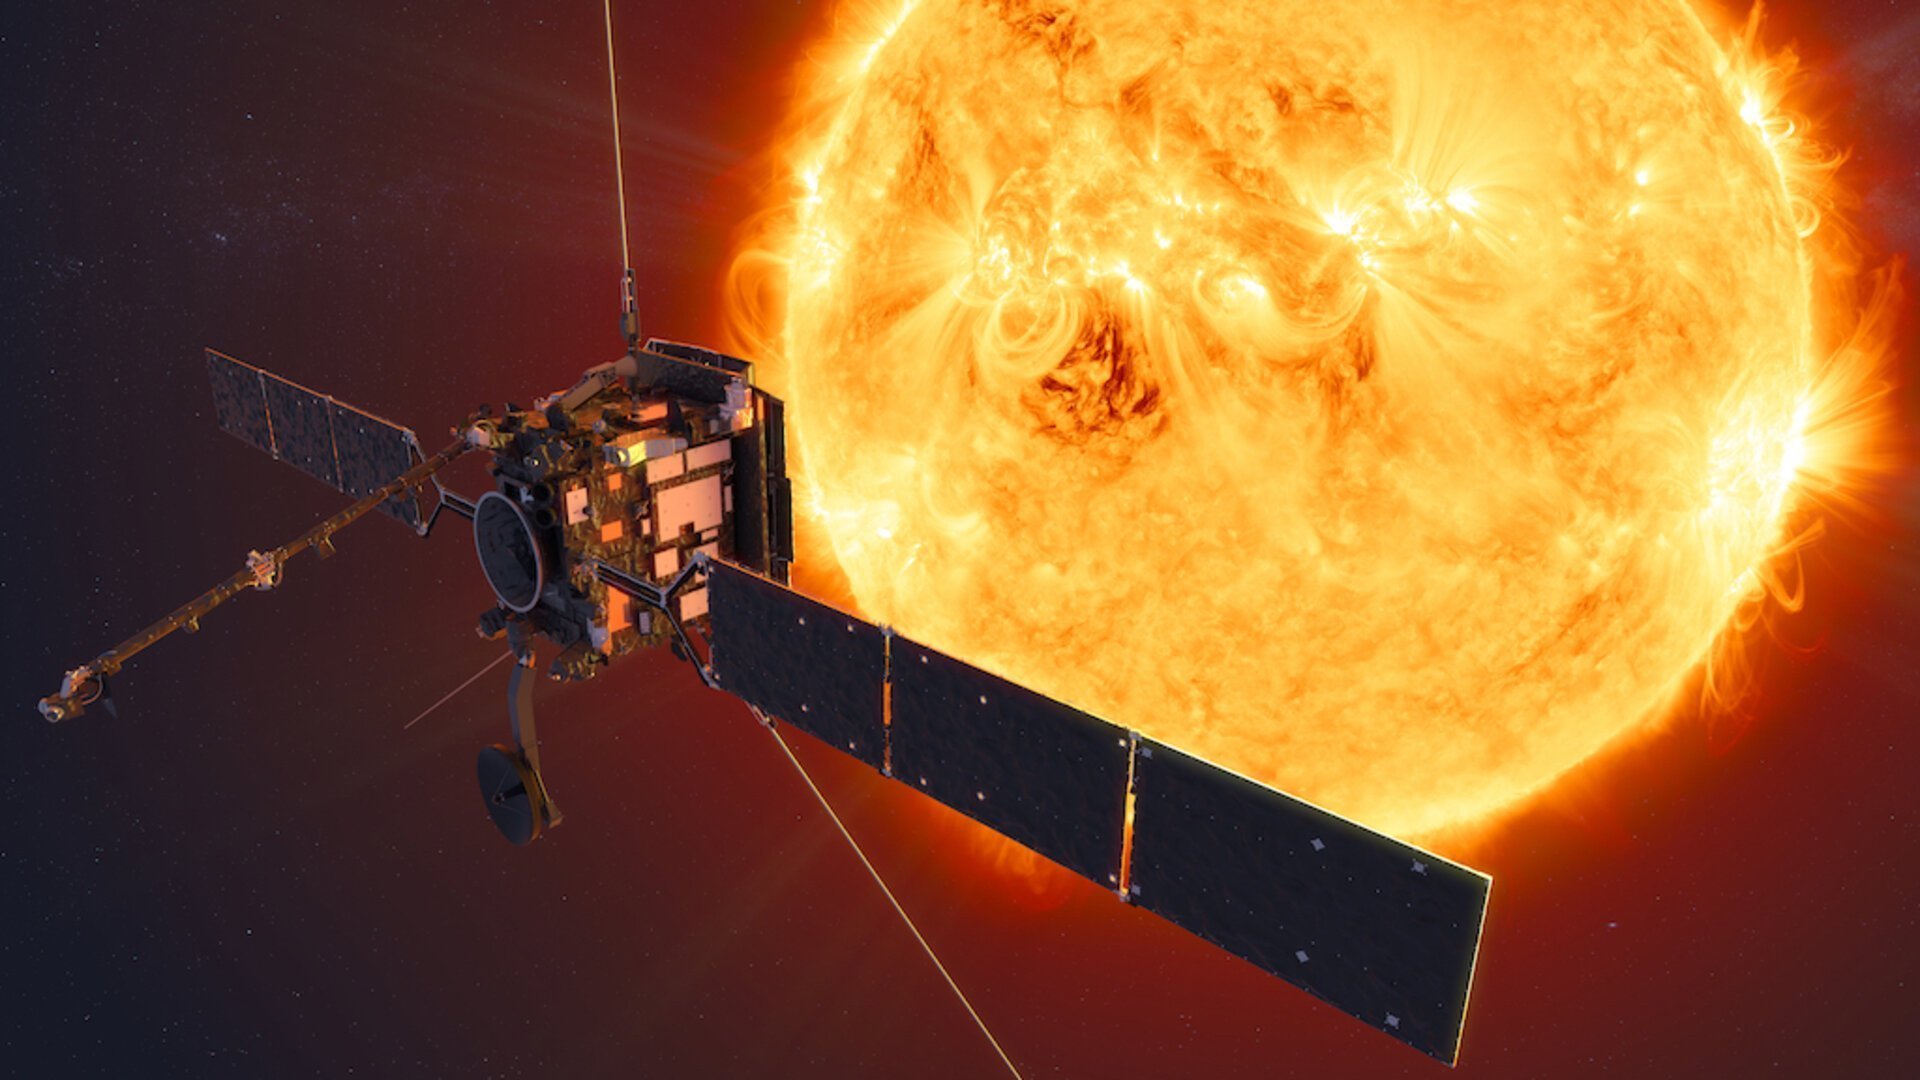 Sonda spaţială Solar Orbiter a încheiat prima misiune, un survol al planetei Venus